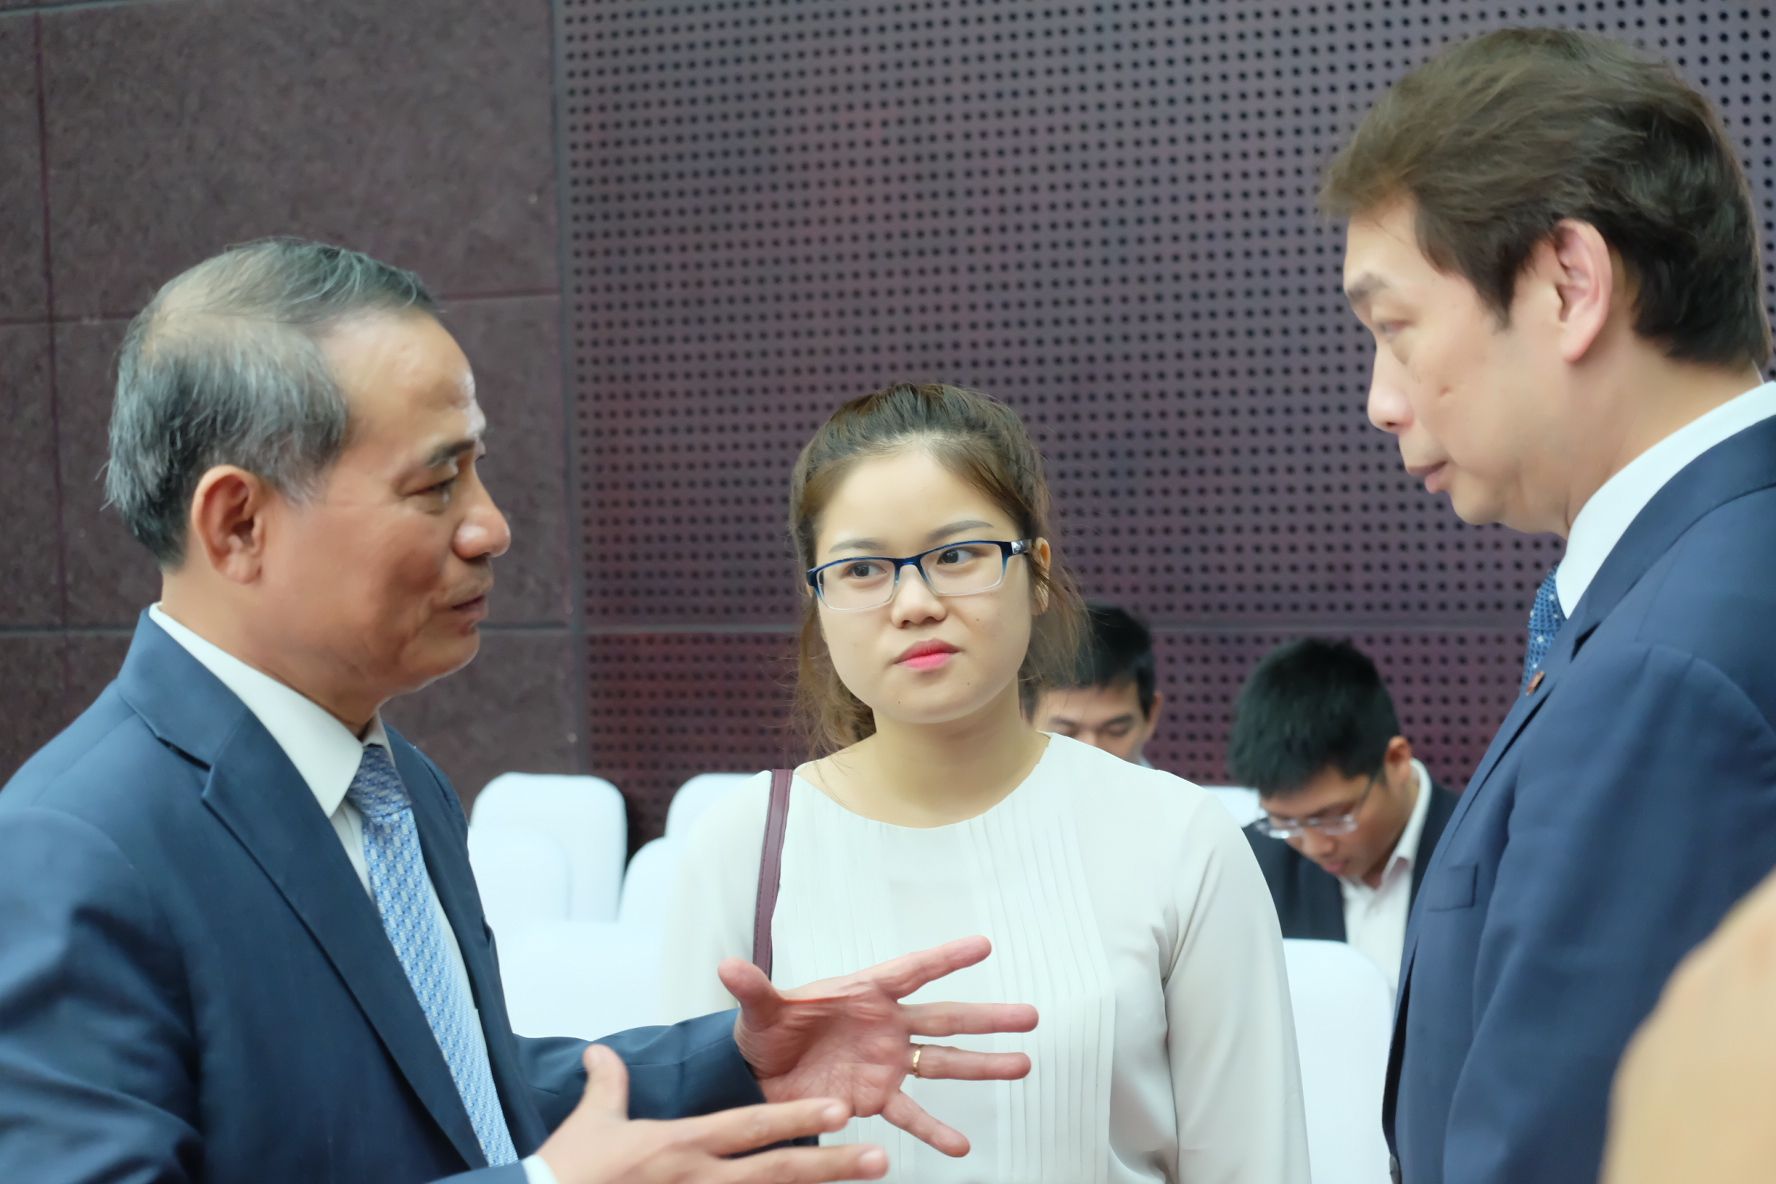 “Vua hàng hiệu” Jonathan Hạnh Nguyễn, đại gia Dũng “lò vôi” nhắm đầu tư vào Đà Nẵng